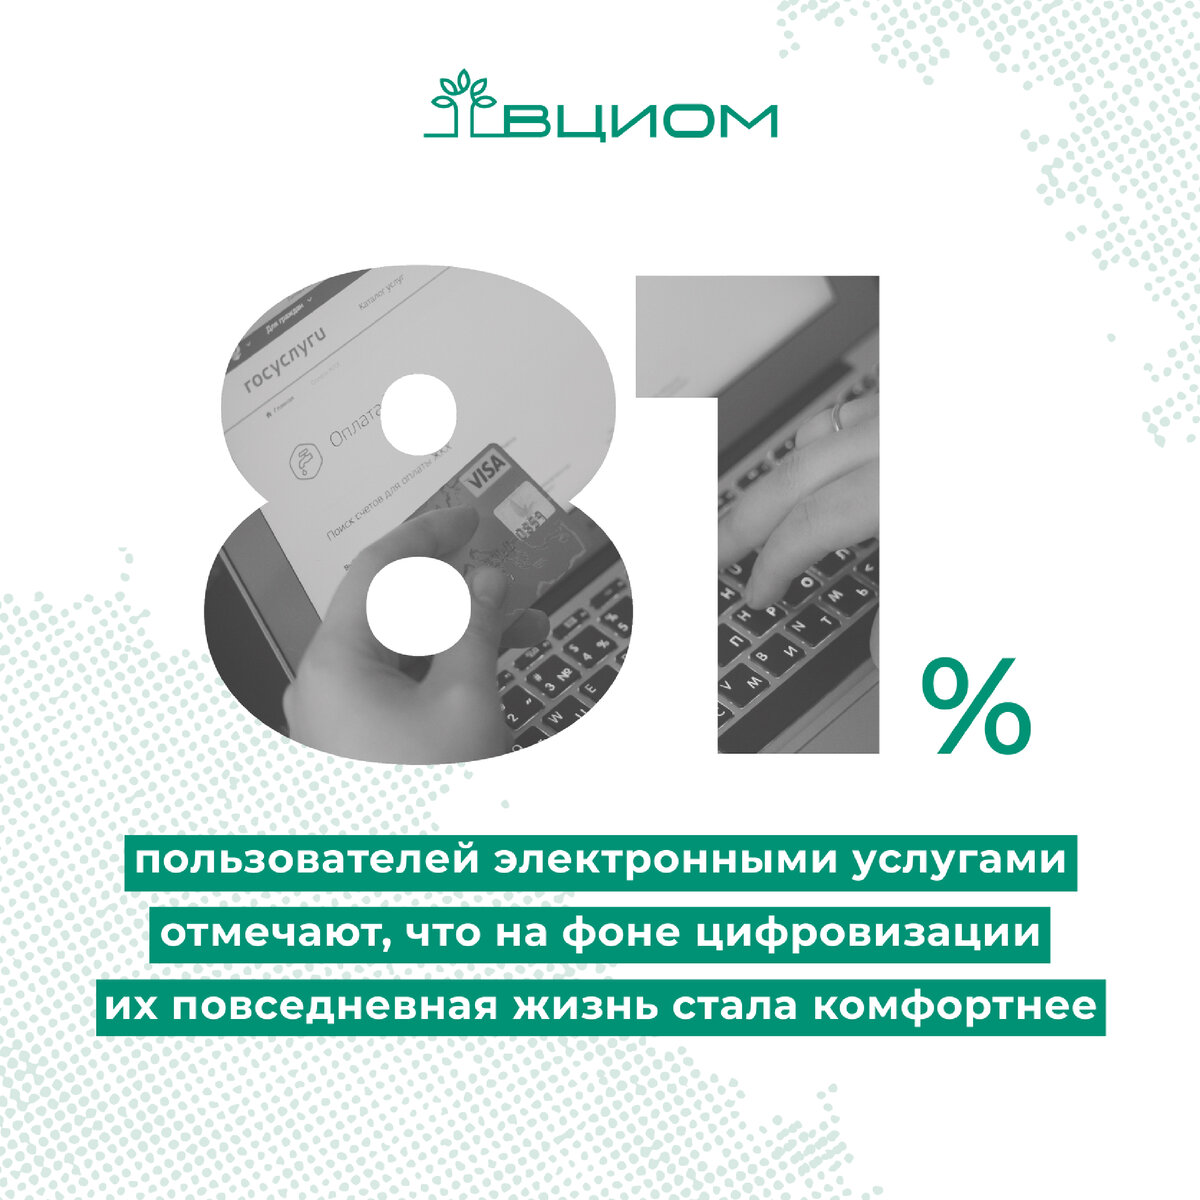 8 из 10 россиян с разной периодичностью пользуются цифровыми услугами (81%), в том числе каждый третий — ежедневно (35%), а каждый пятый — несколько раз в неделю (21%).